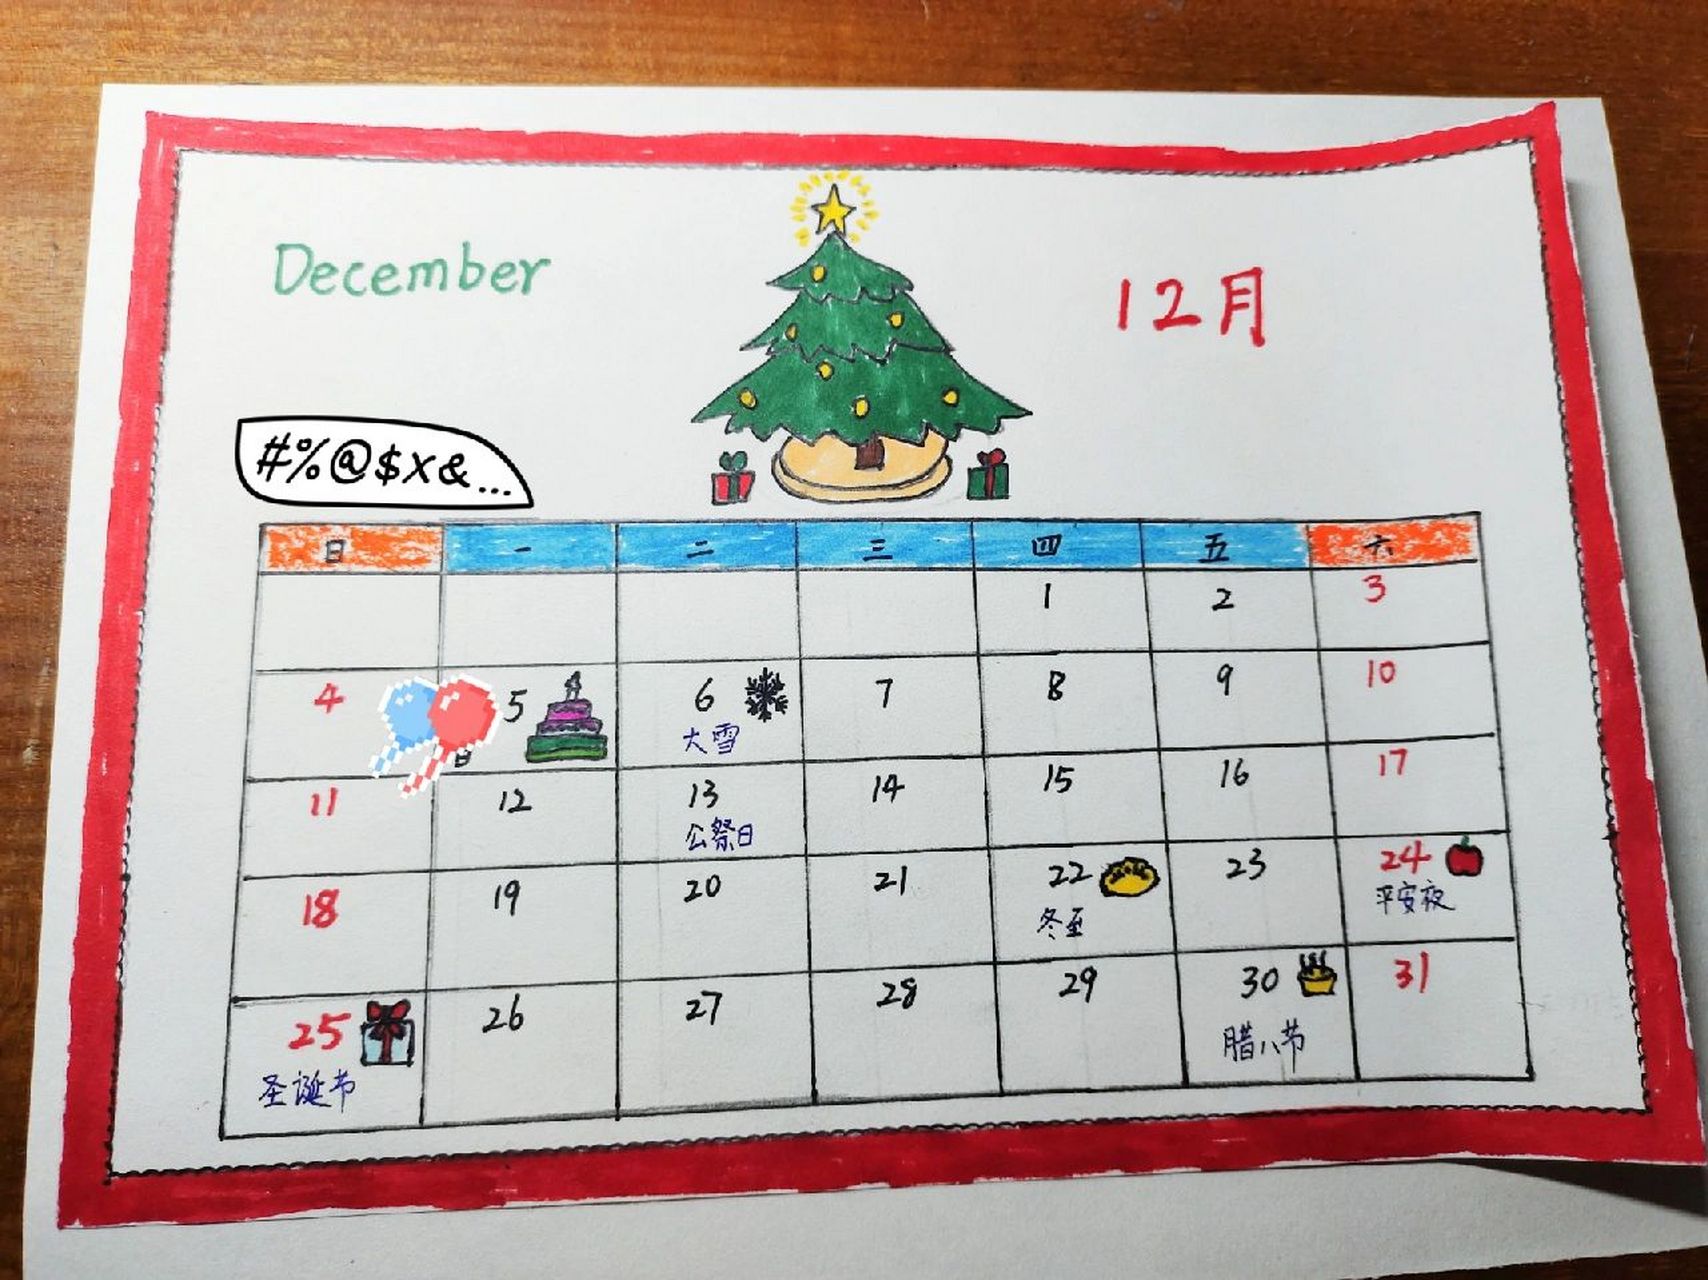 月历 借着这次数学作业——手绘月历,我们选择制作2022年12月份的月历